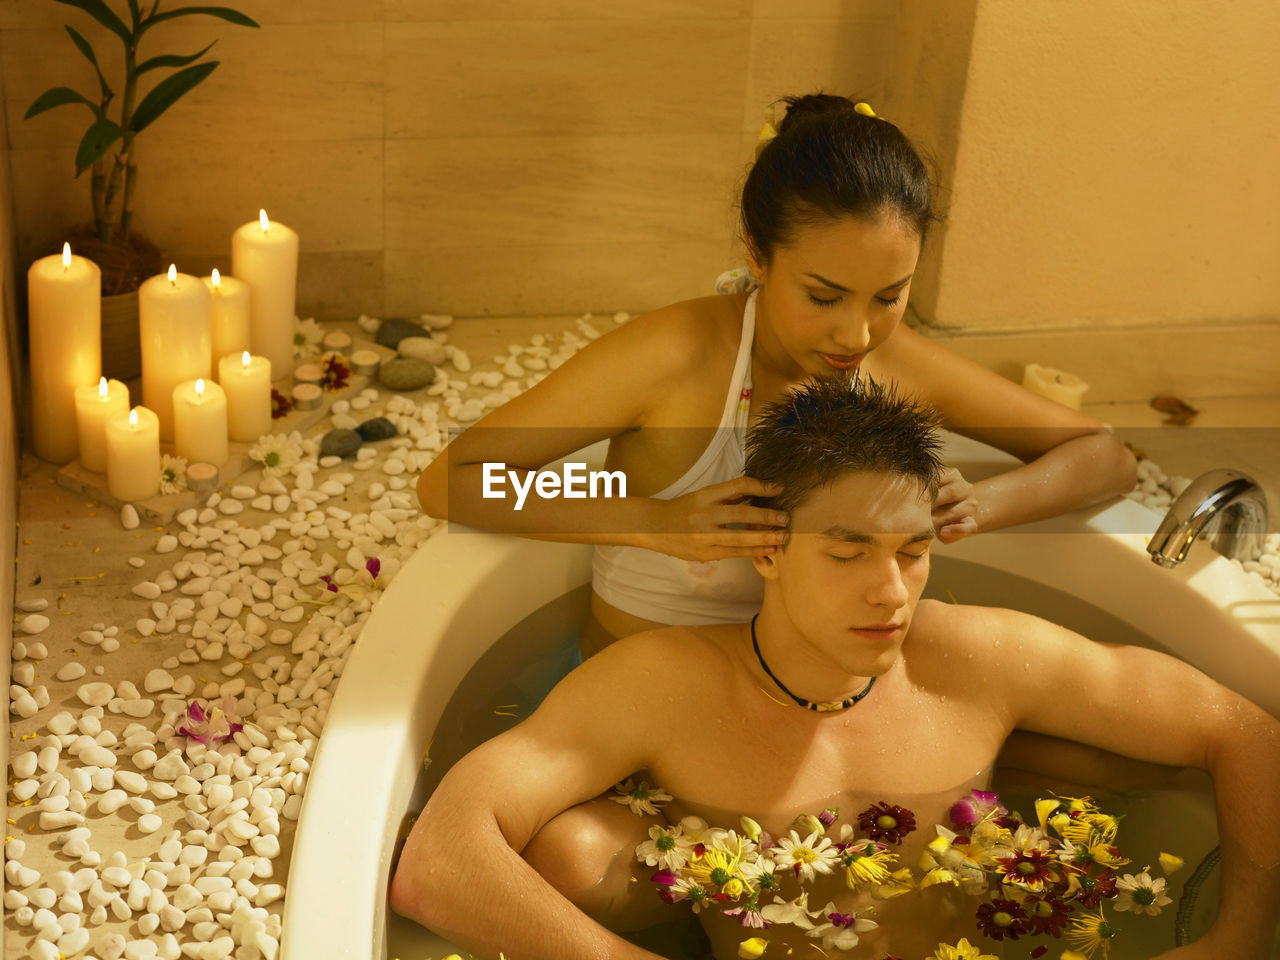 Girlfriend giving head massage to boyfriend in bathtub